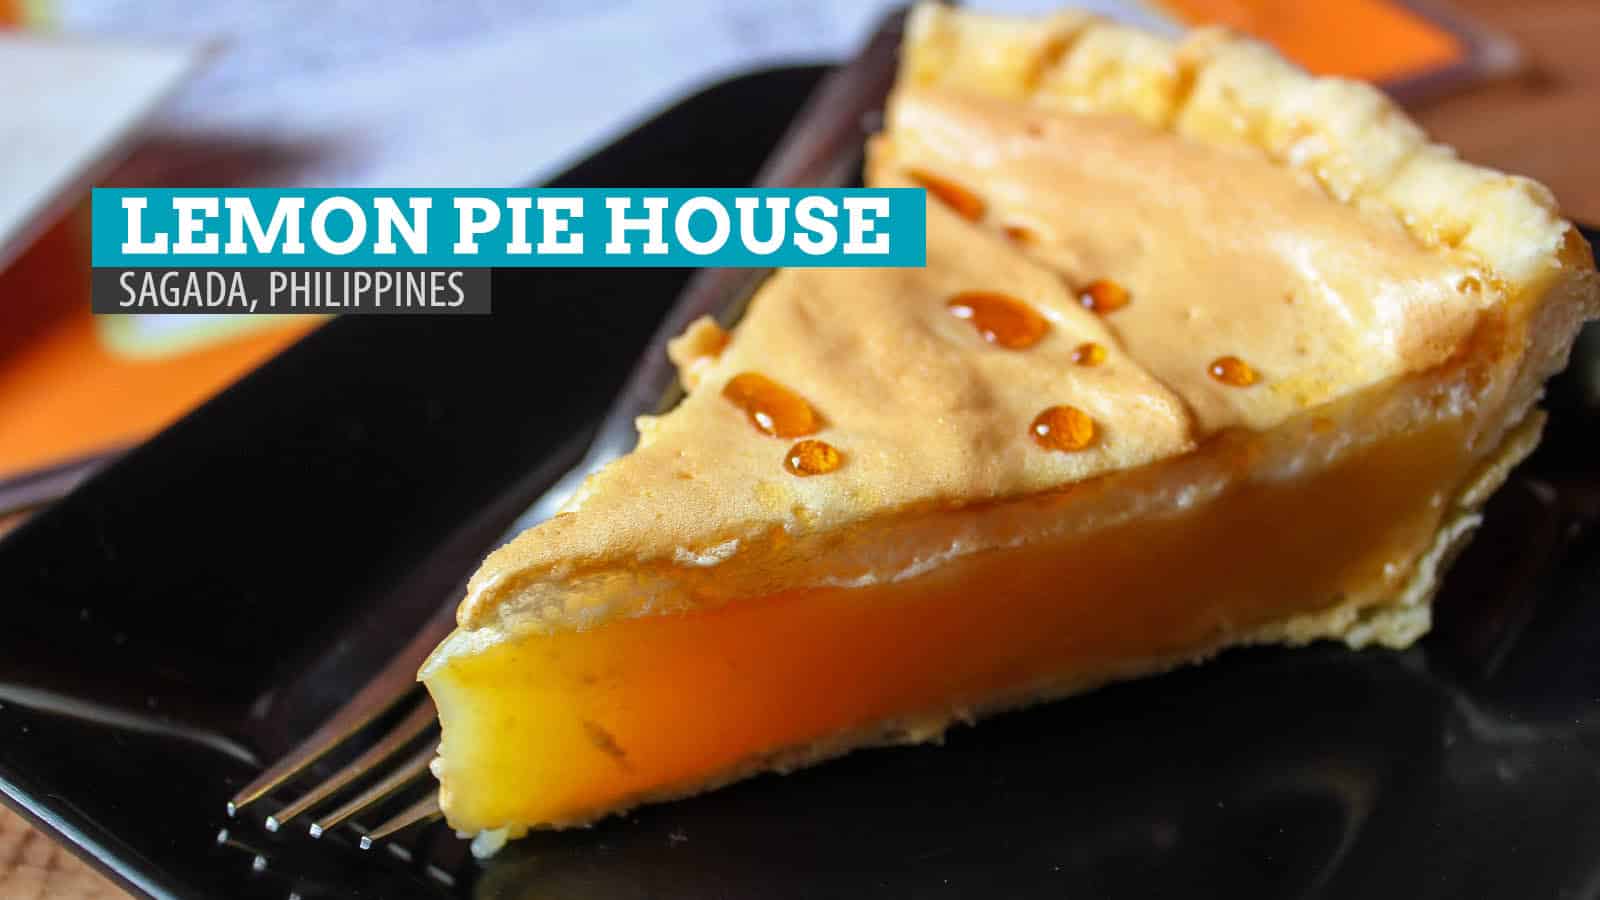 柠檬派之家:菲律宾Sagada的美食之家